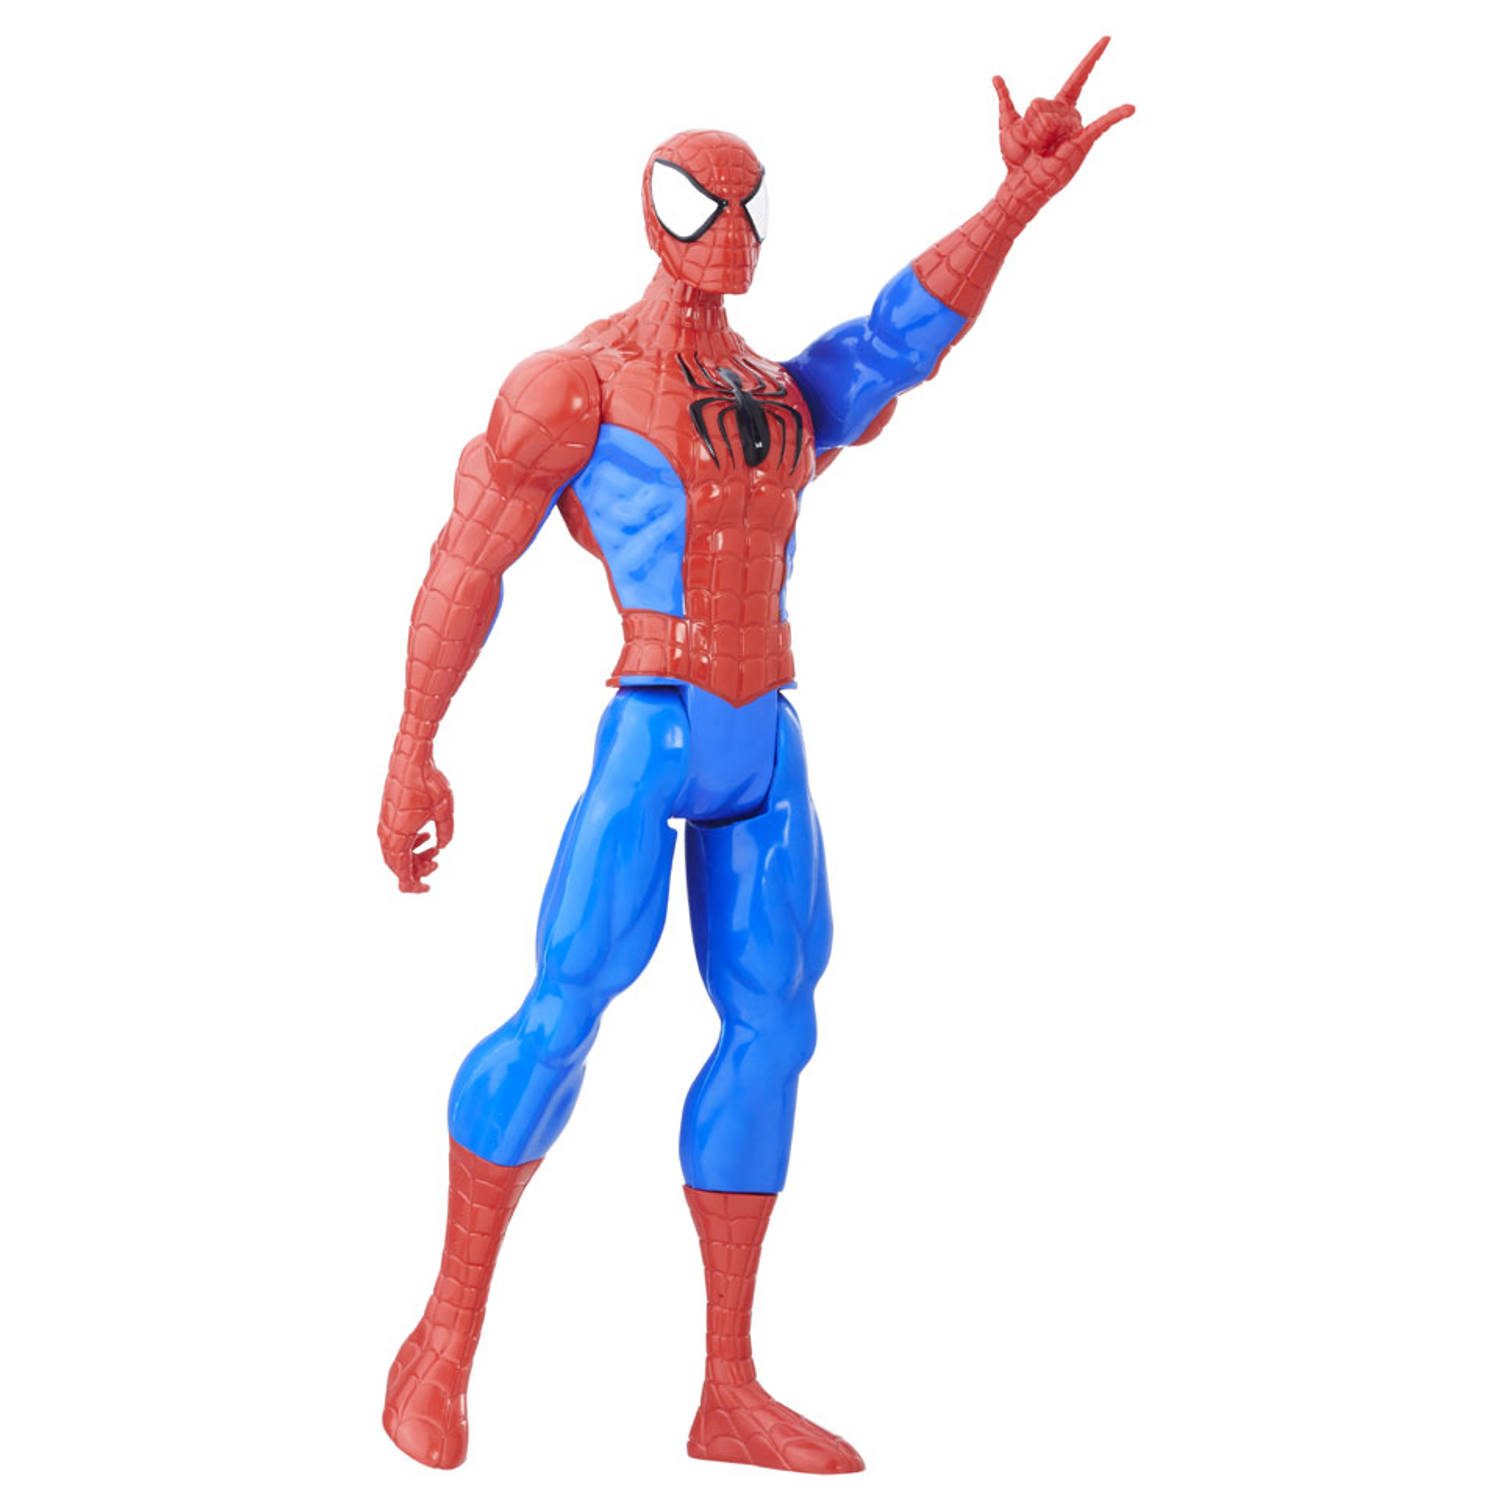 Woestijn Hardheid Lao Marvel Spider-Man figuur - 30 cm | Blokker